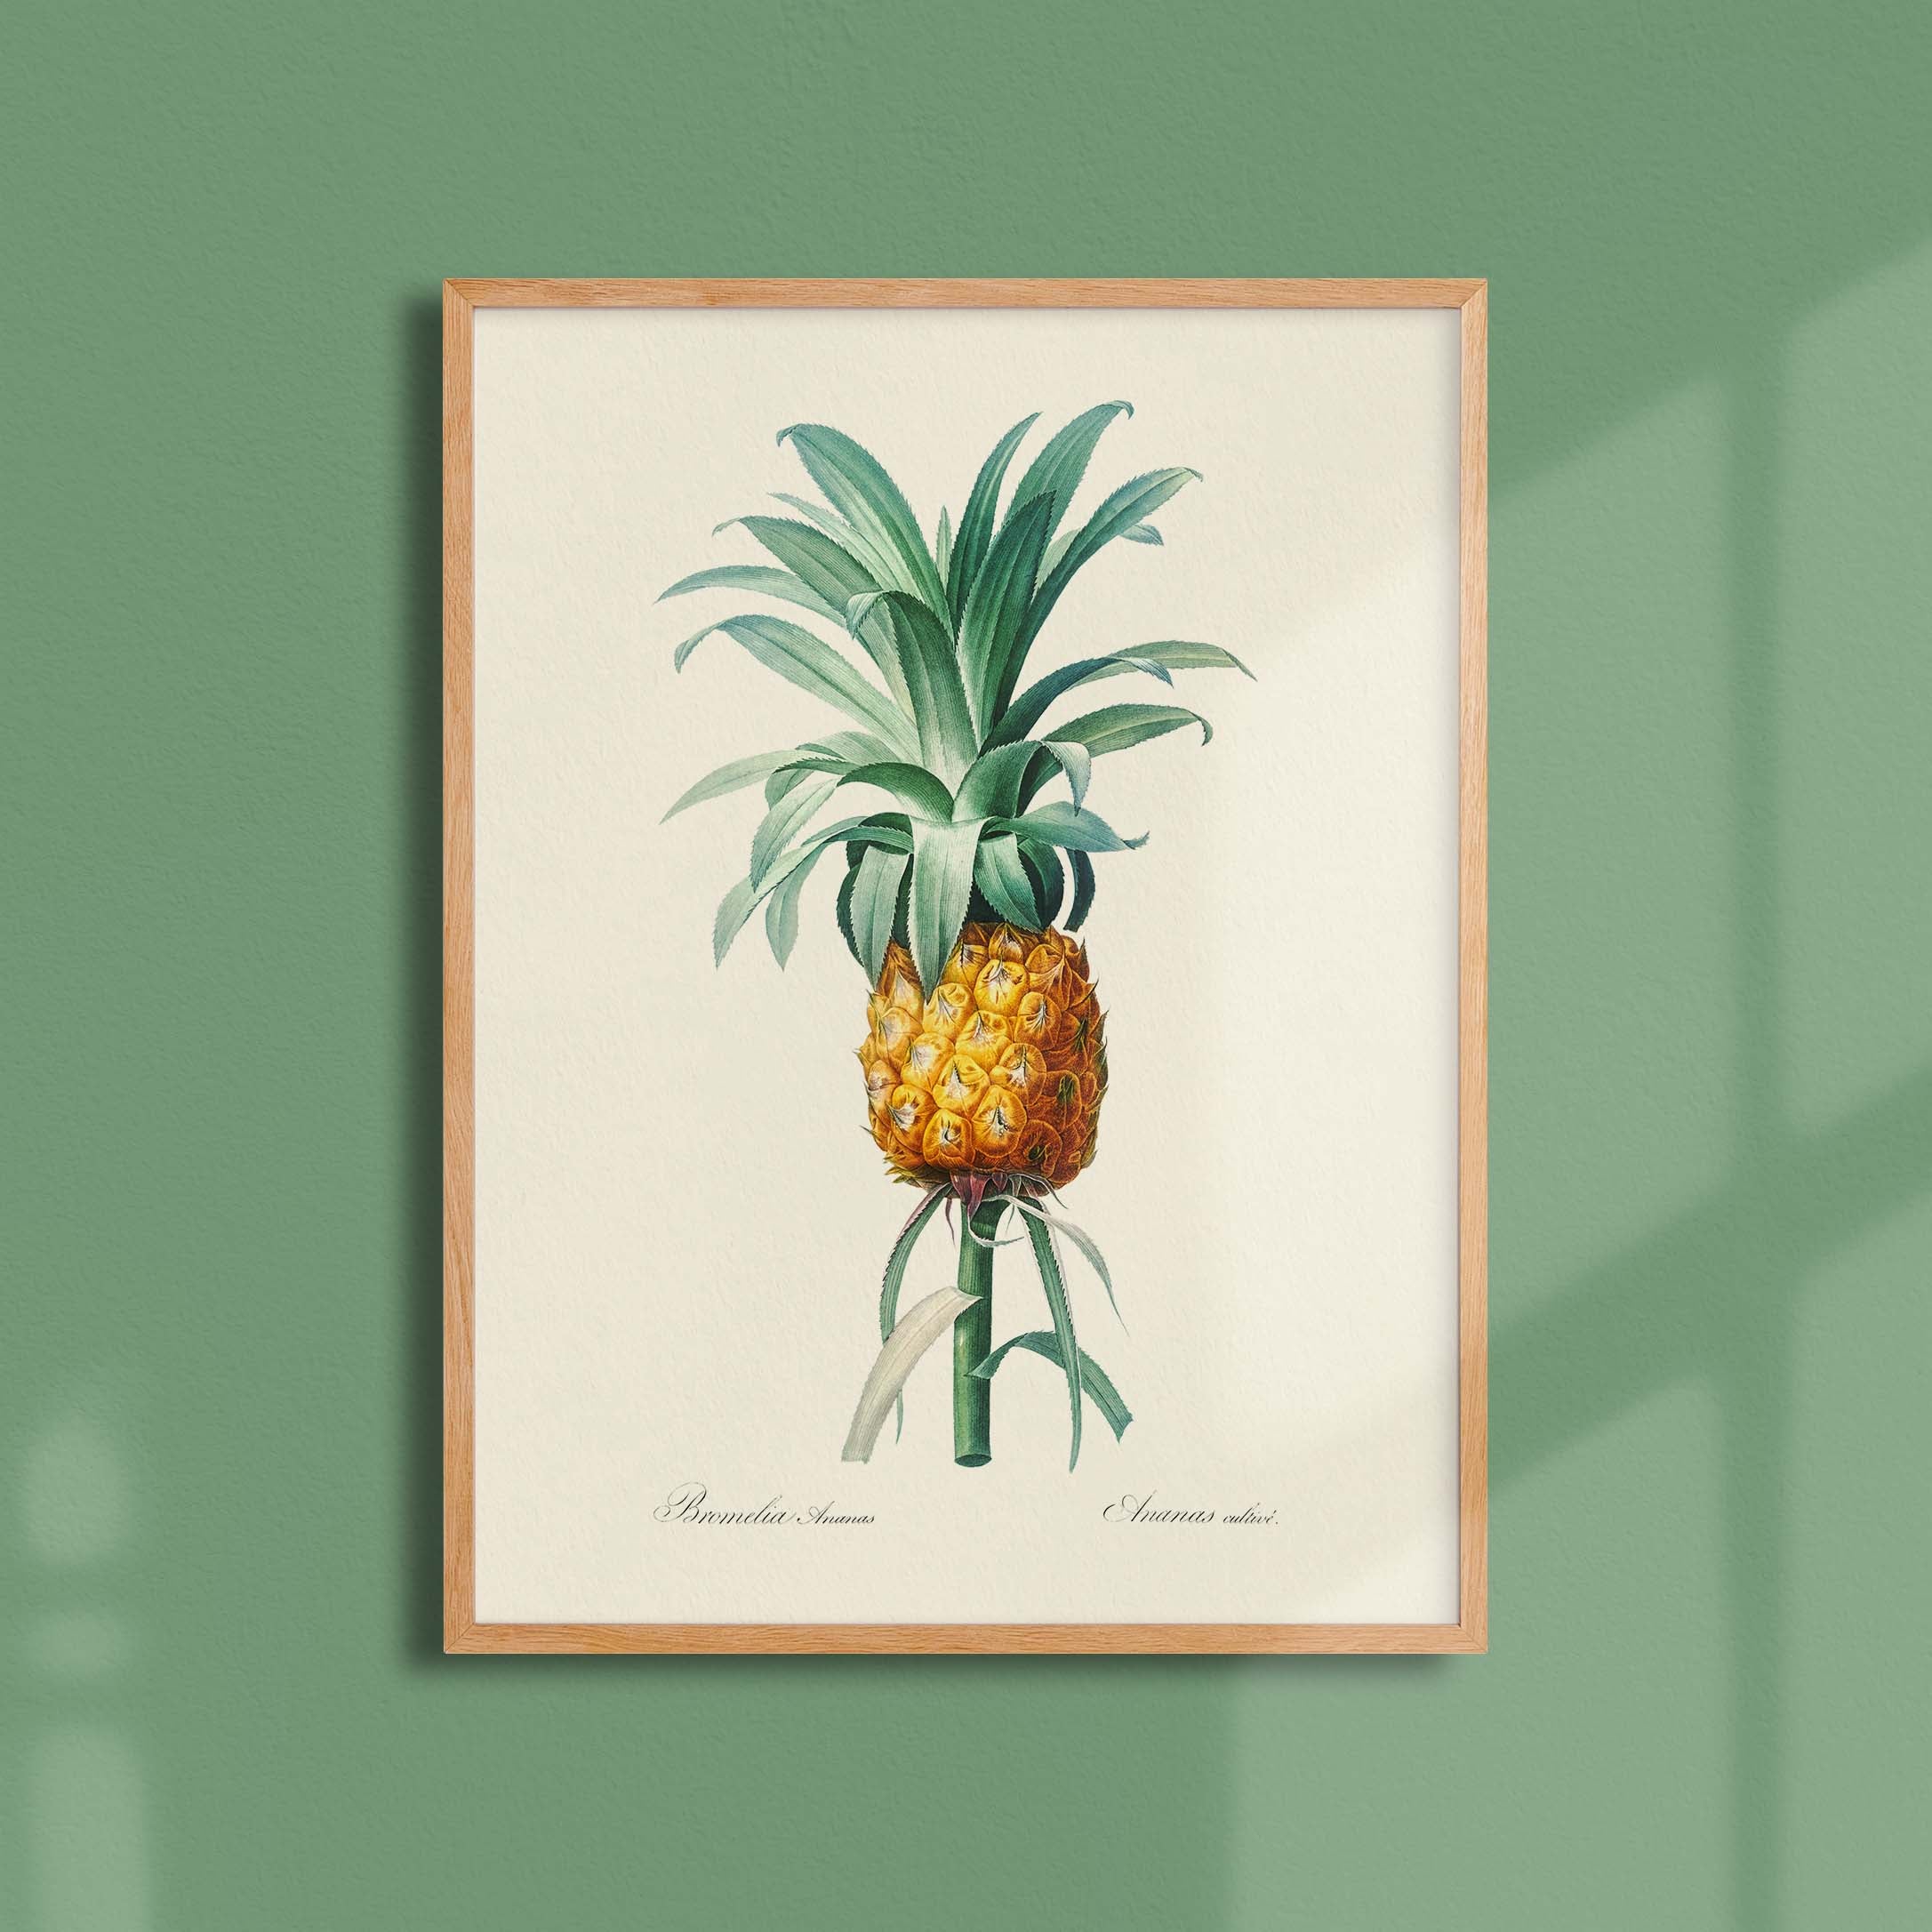 Planche botanique - Ananas cultivé-oneart.fr